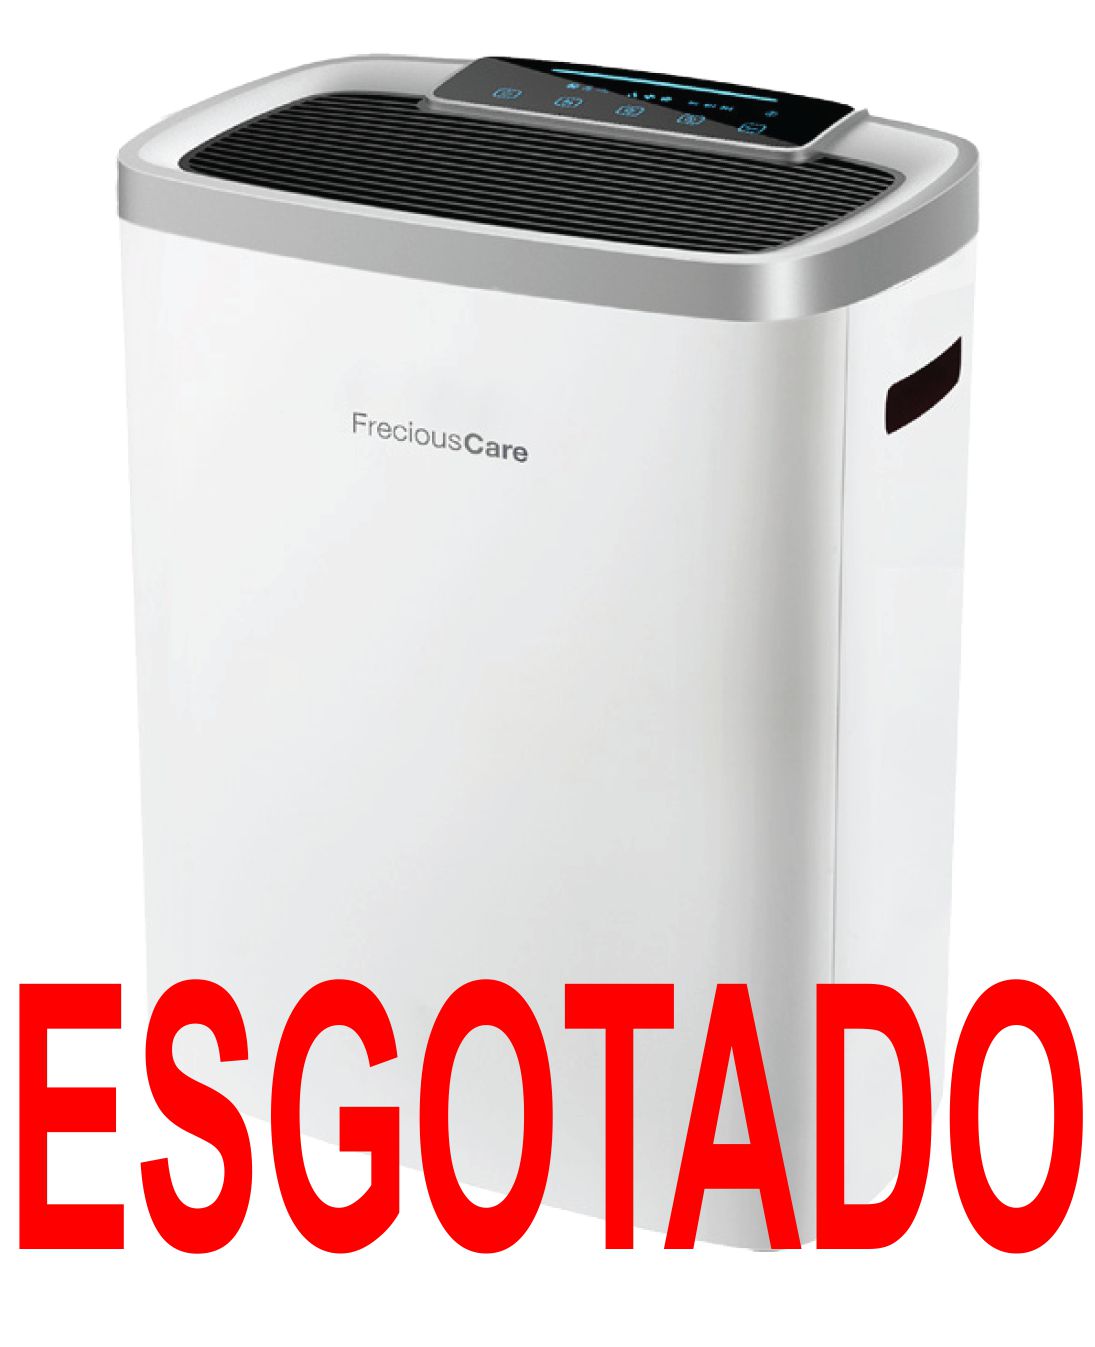 FCI5000_ESGOTADO